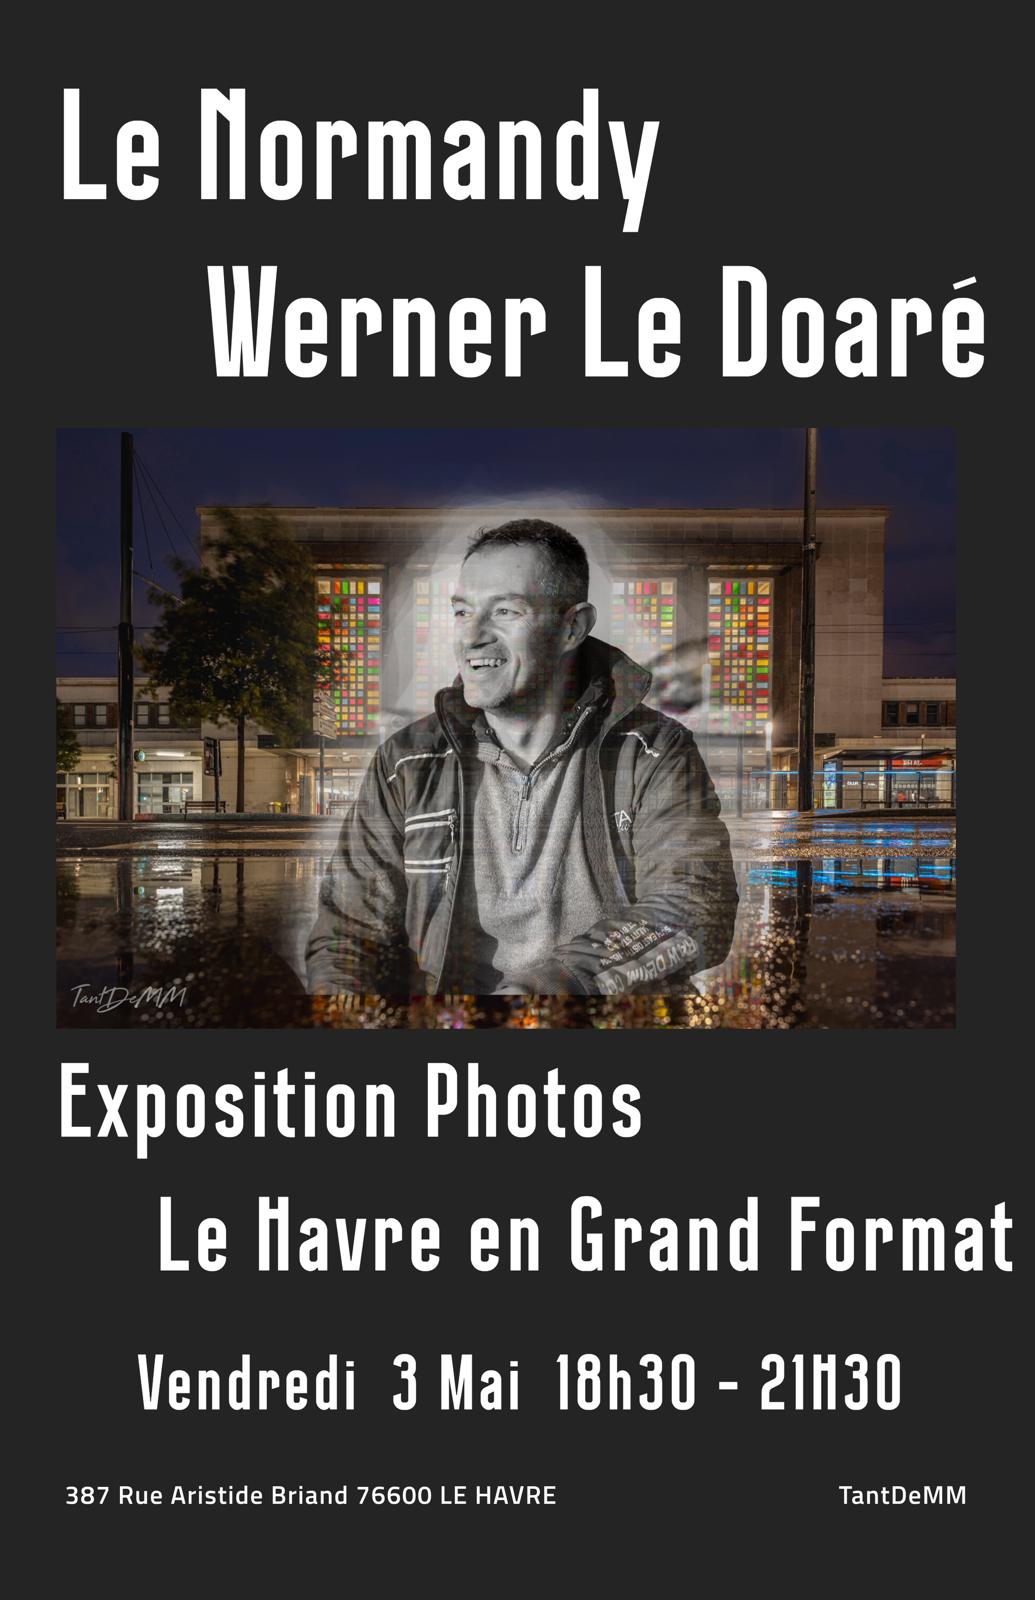 Exposition Photo Werner Le Doaré - Le Havre en grand format